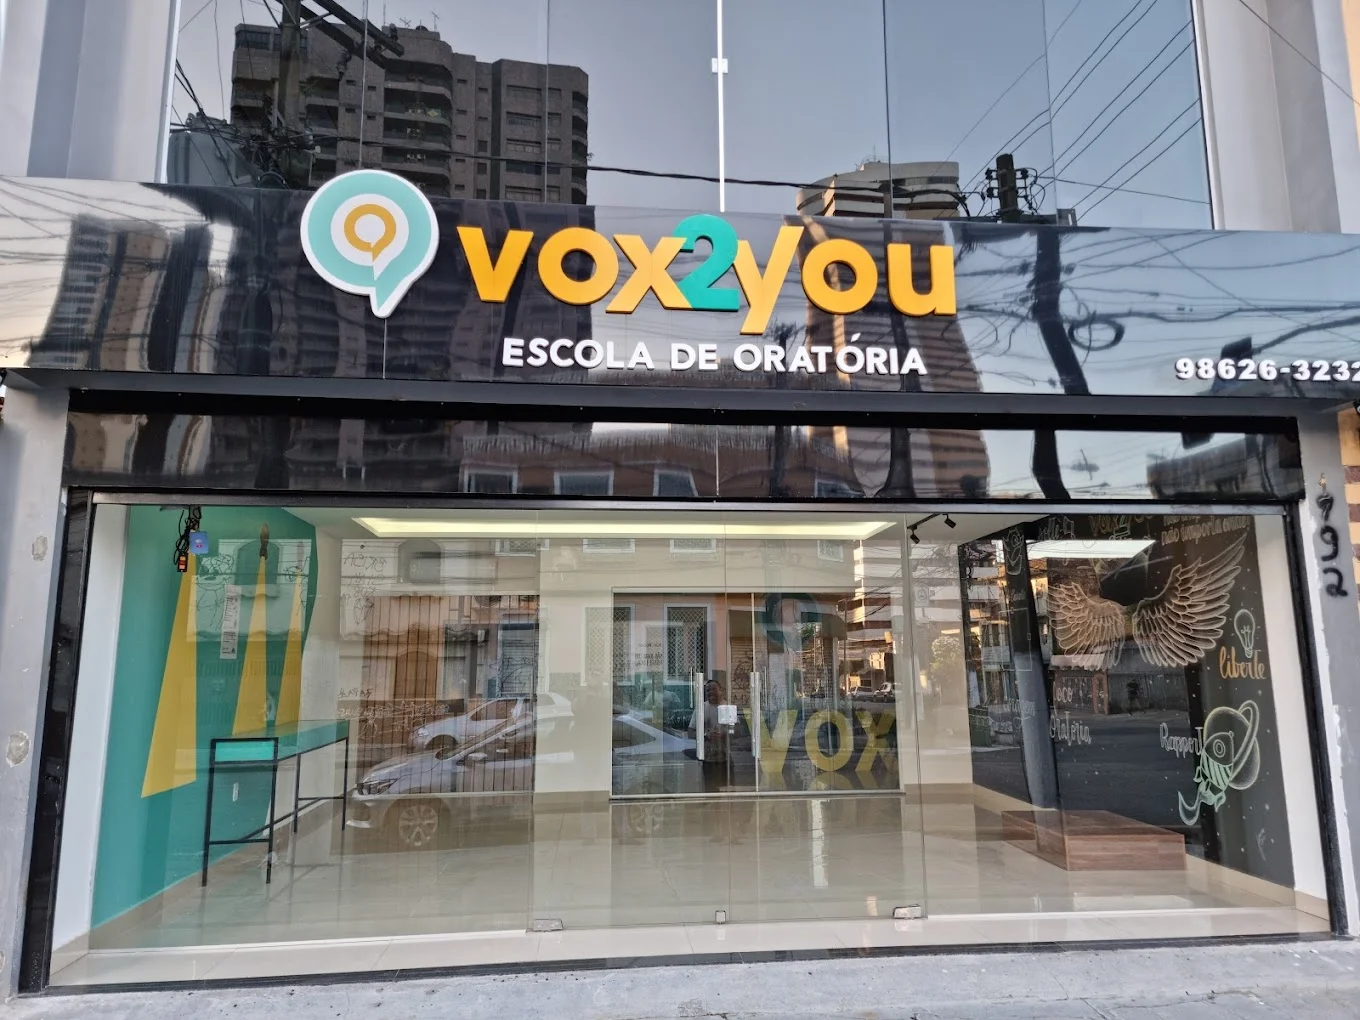 Vox2you  Belém - São Brás